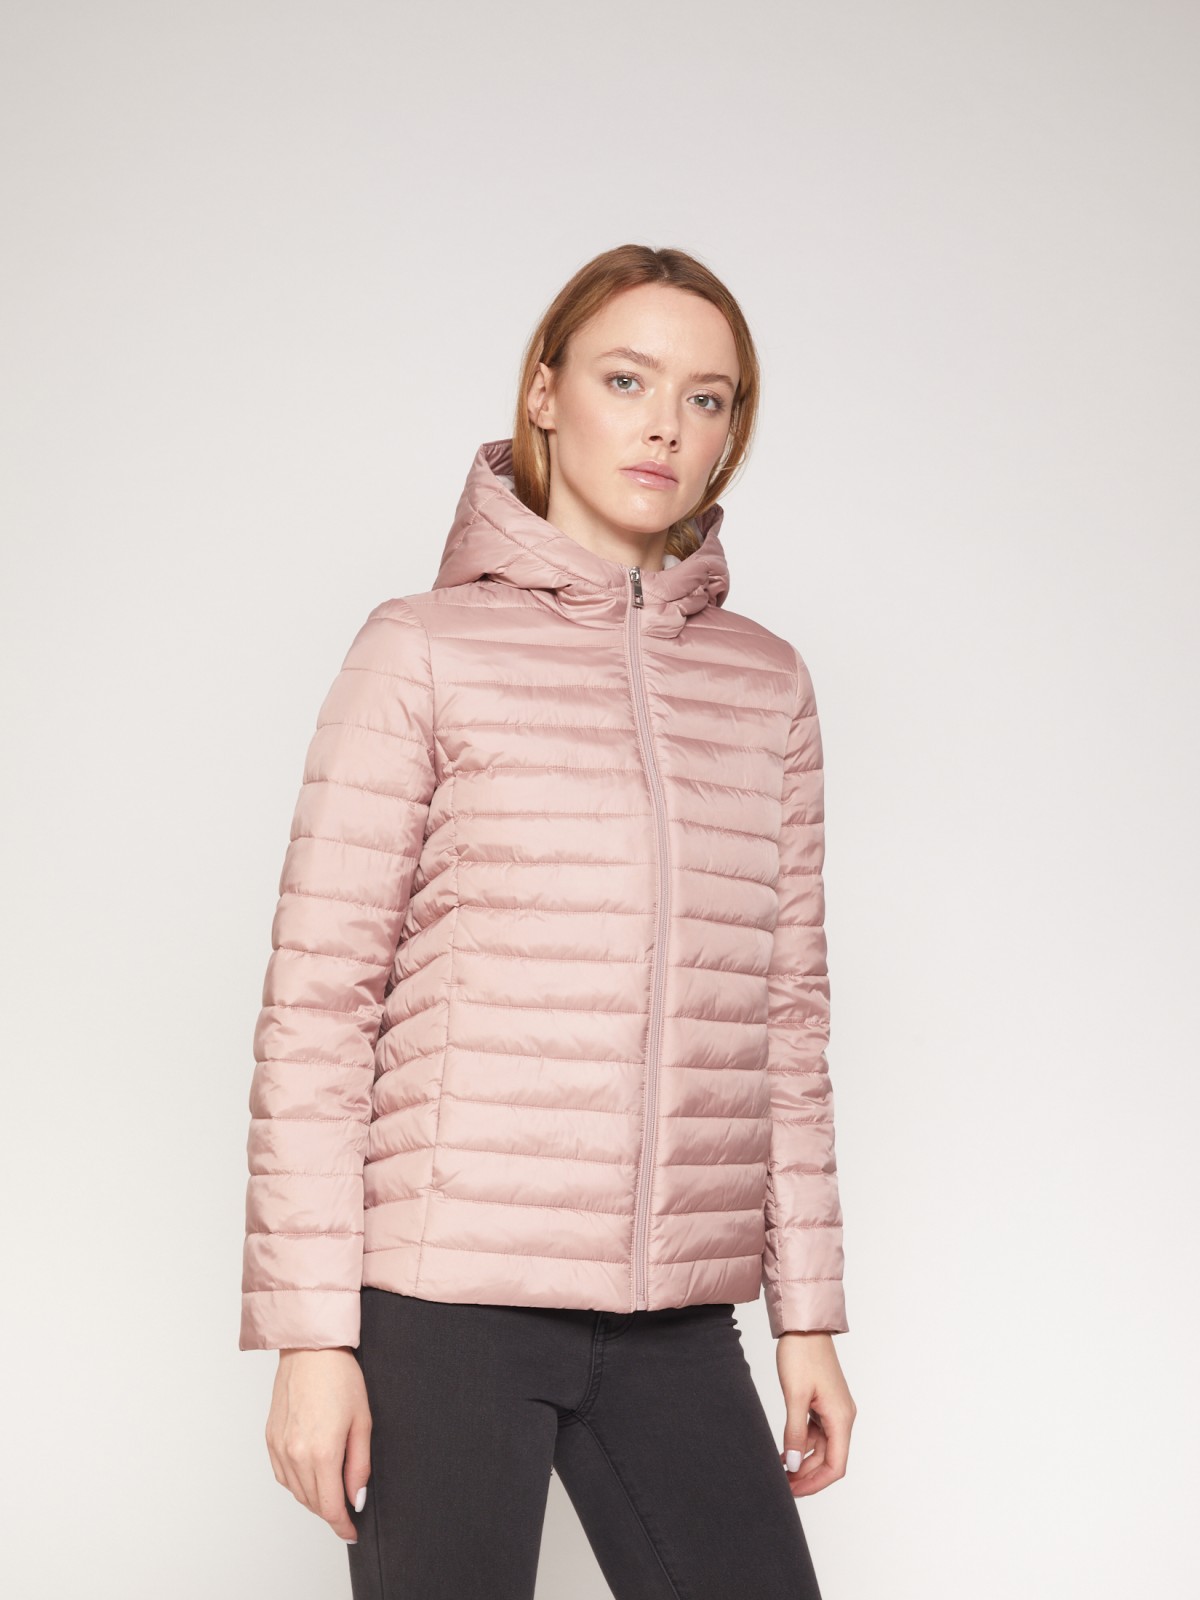 Лёгкая куртка с капюшоном zolla 021335112024, цвет розовый, размер XS - фото 2